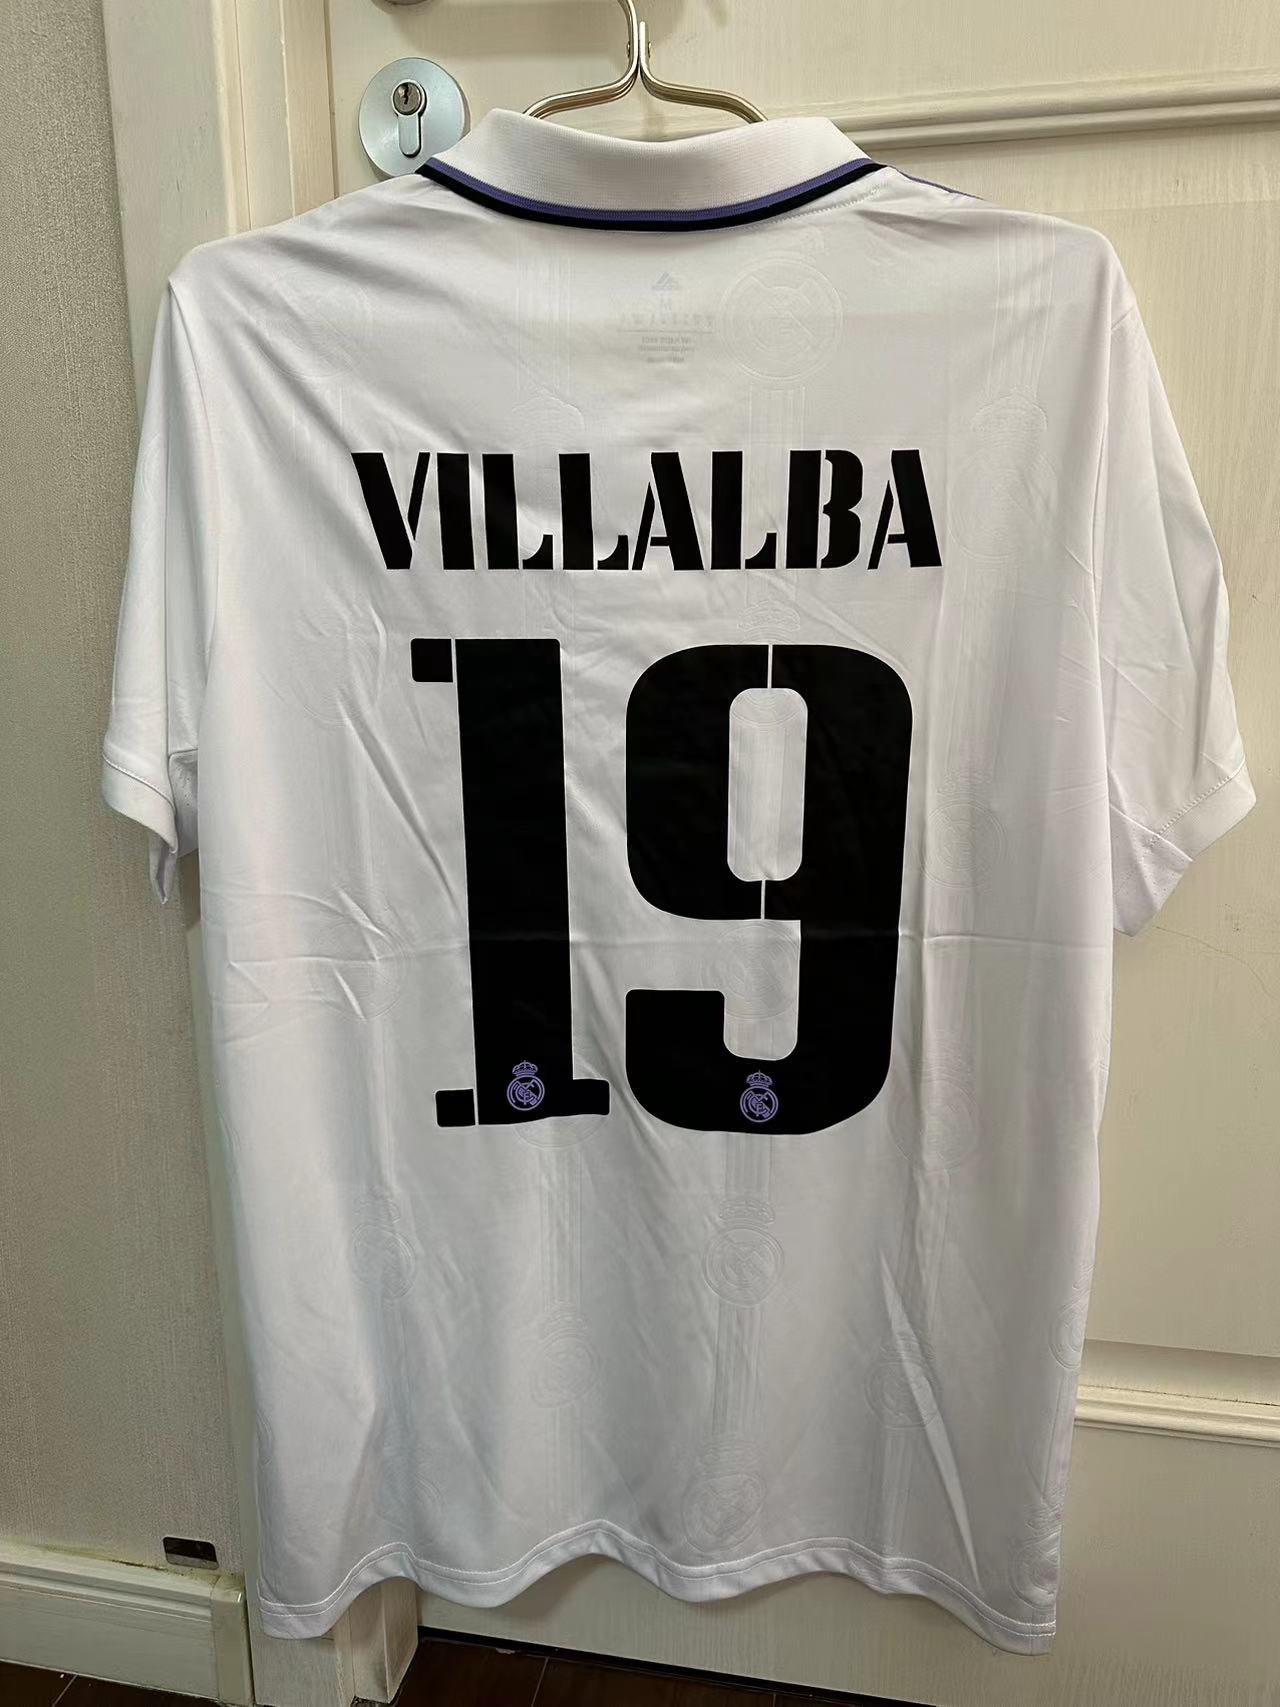 Camisetas De Fútbol Baratas - Talla L - 48 [Bratas048] - €9.90 